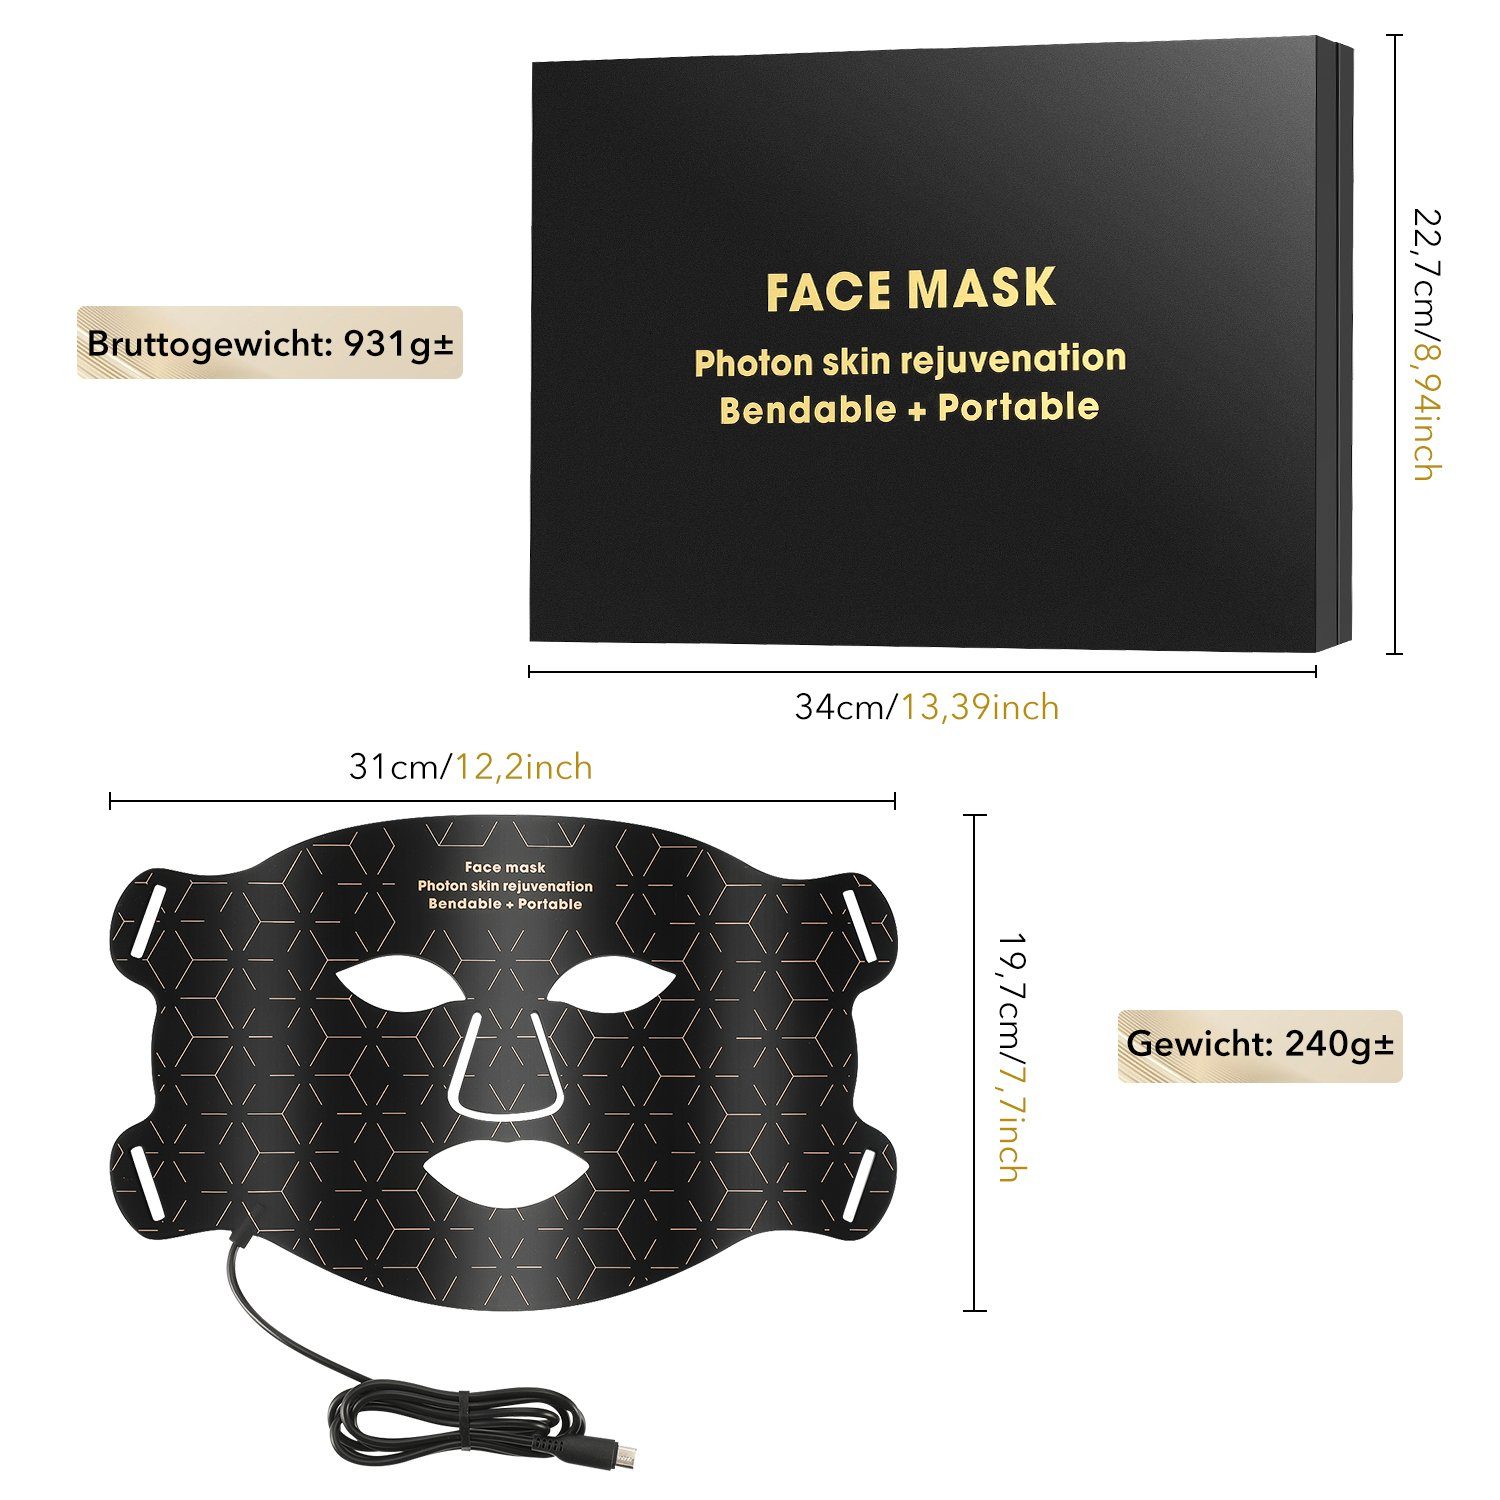 oyajia Kosmetikbehandlungsgerät 4 Anti maske, Farben Lichttherapie,Photonen-Hautverjüngung für LED Gesicht Hautverjüngung Anti-Aging Gesichtsmasken Akne Falten Anti